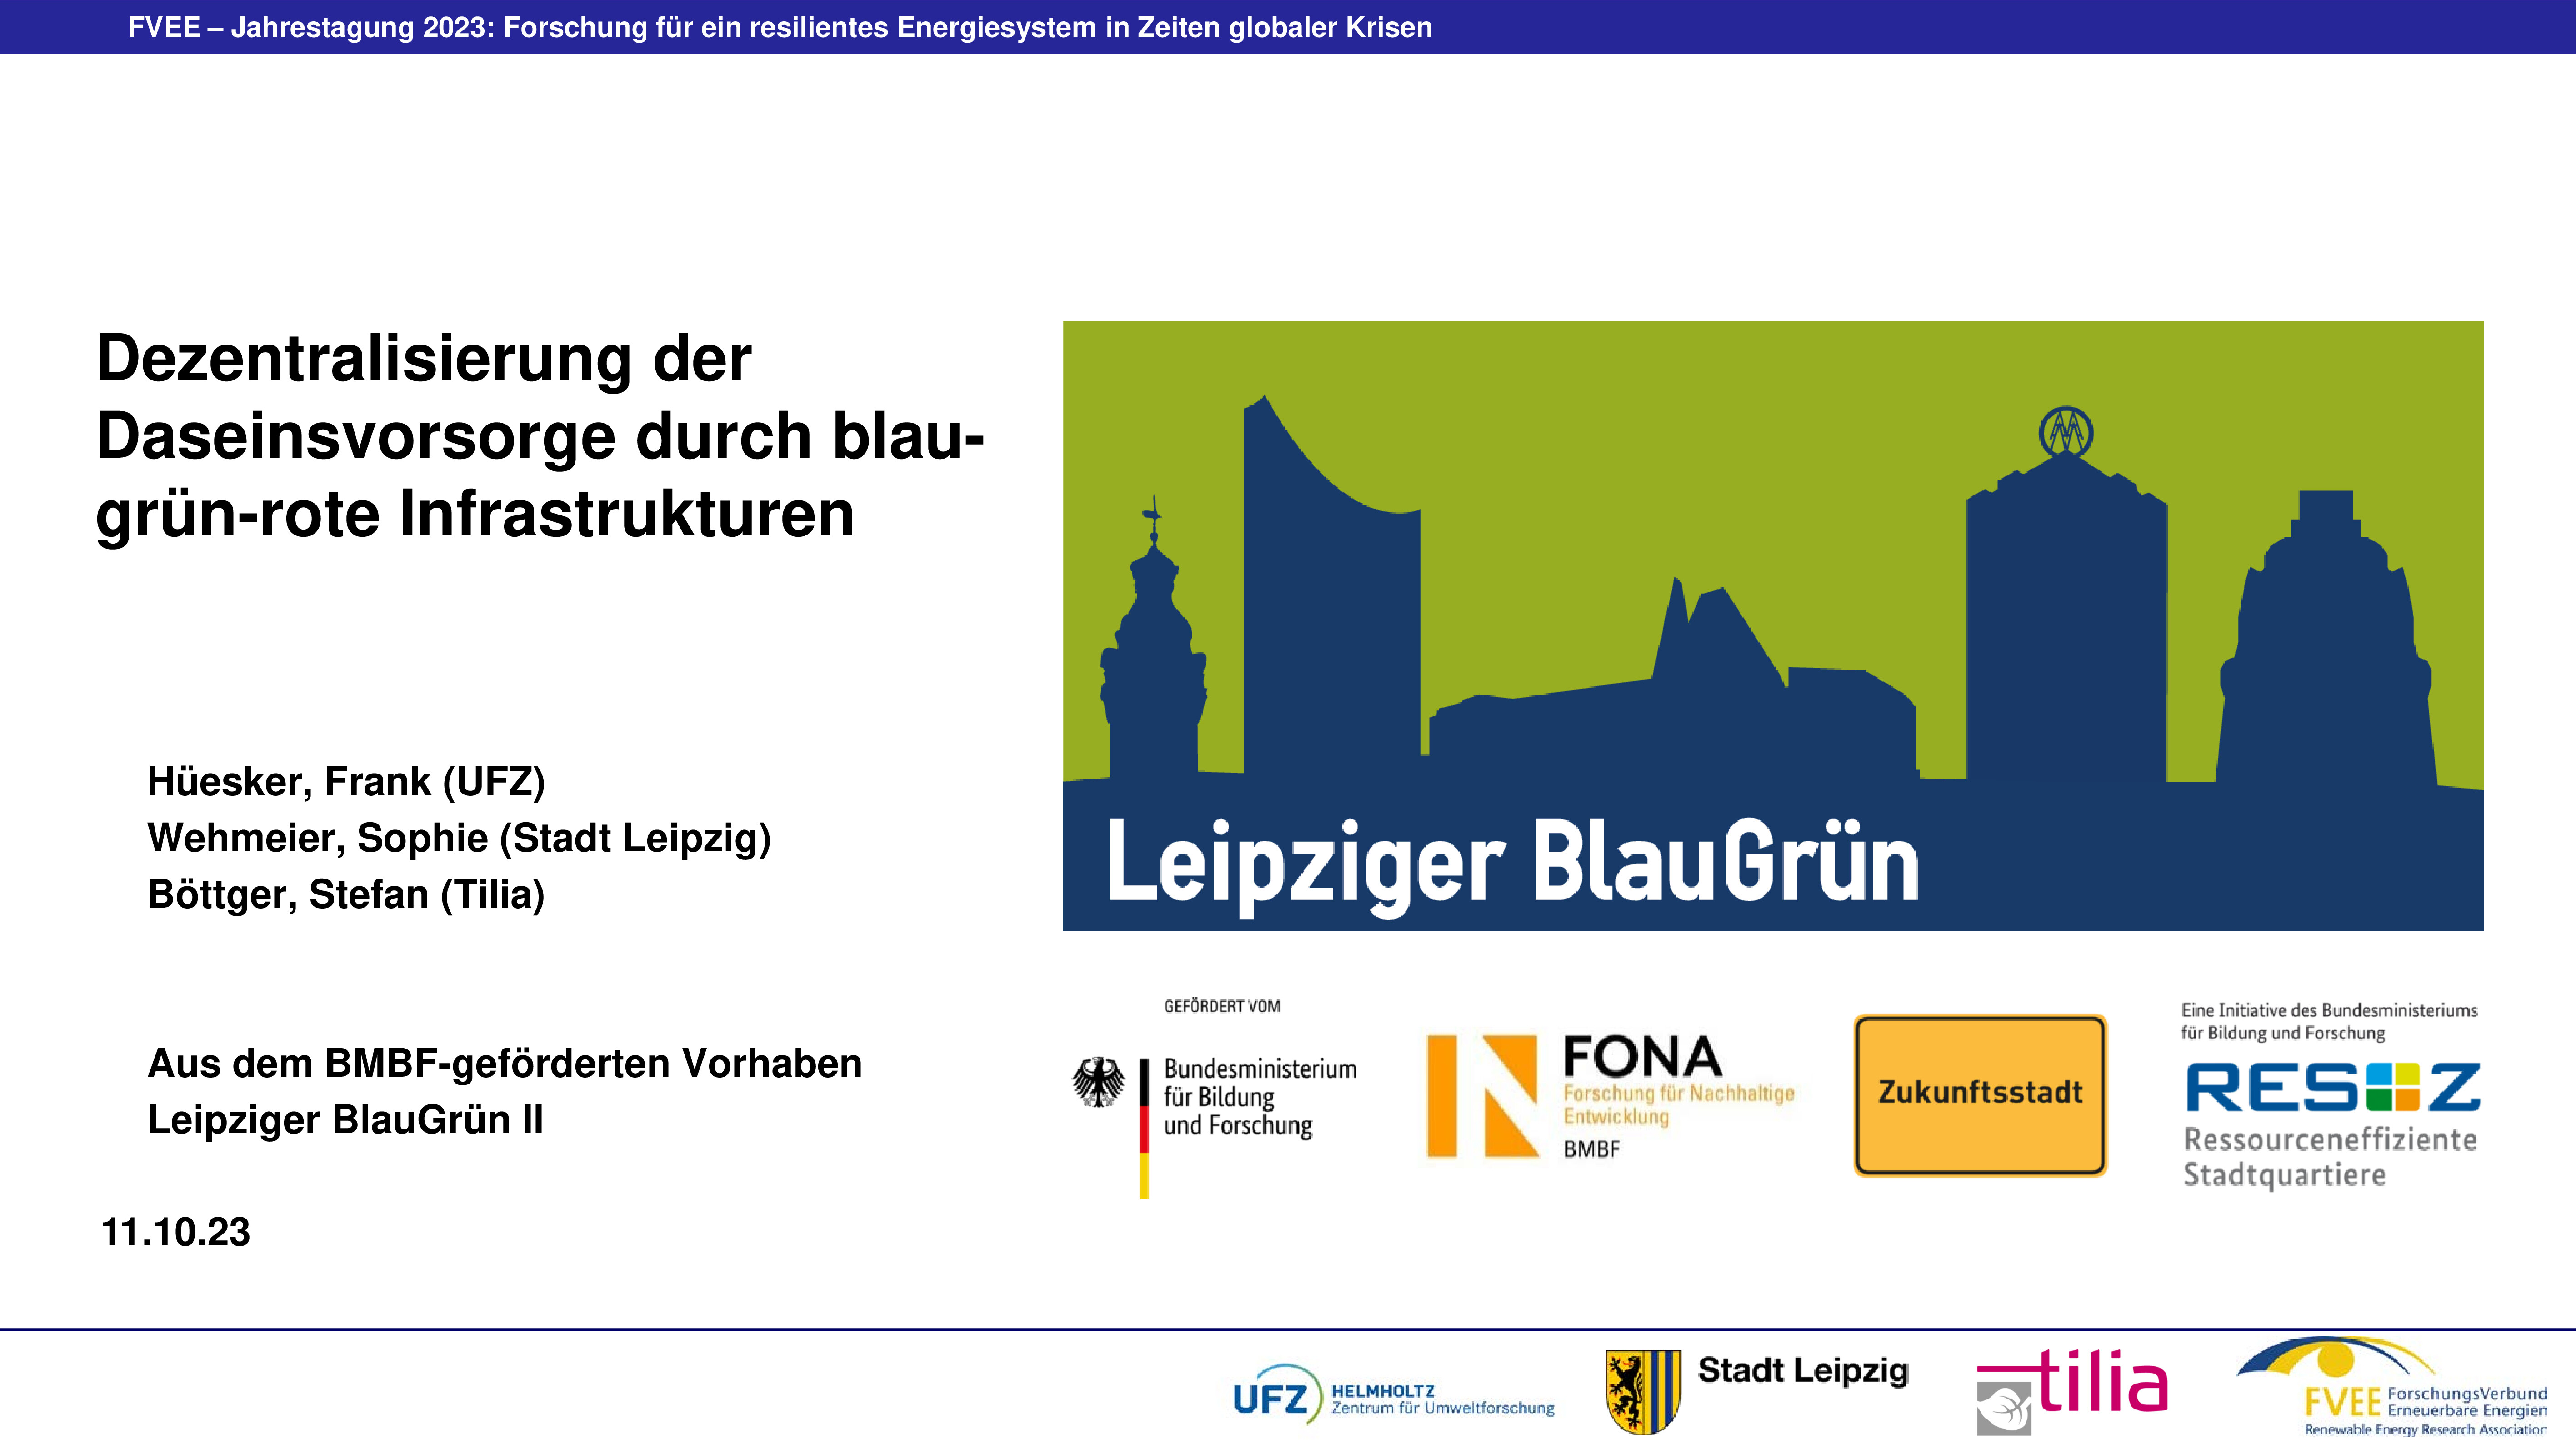 Dezentralisierung der Daseinsvorsorge durch blau-grün-rote Infrastrukturen (Hüesker - UFZ)